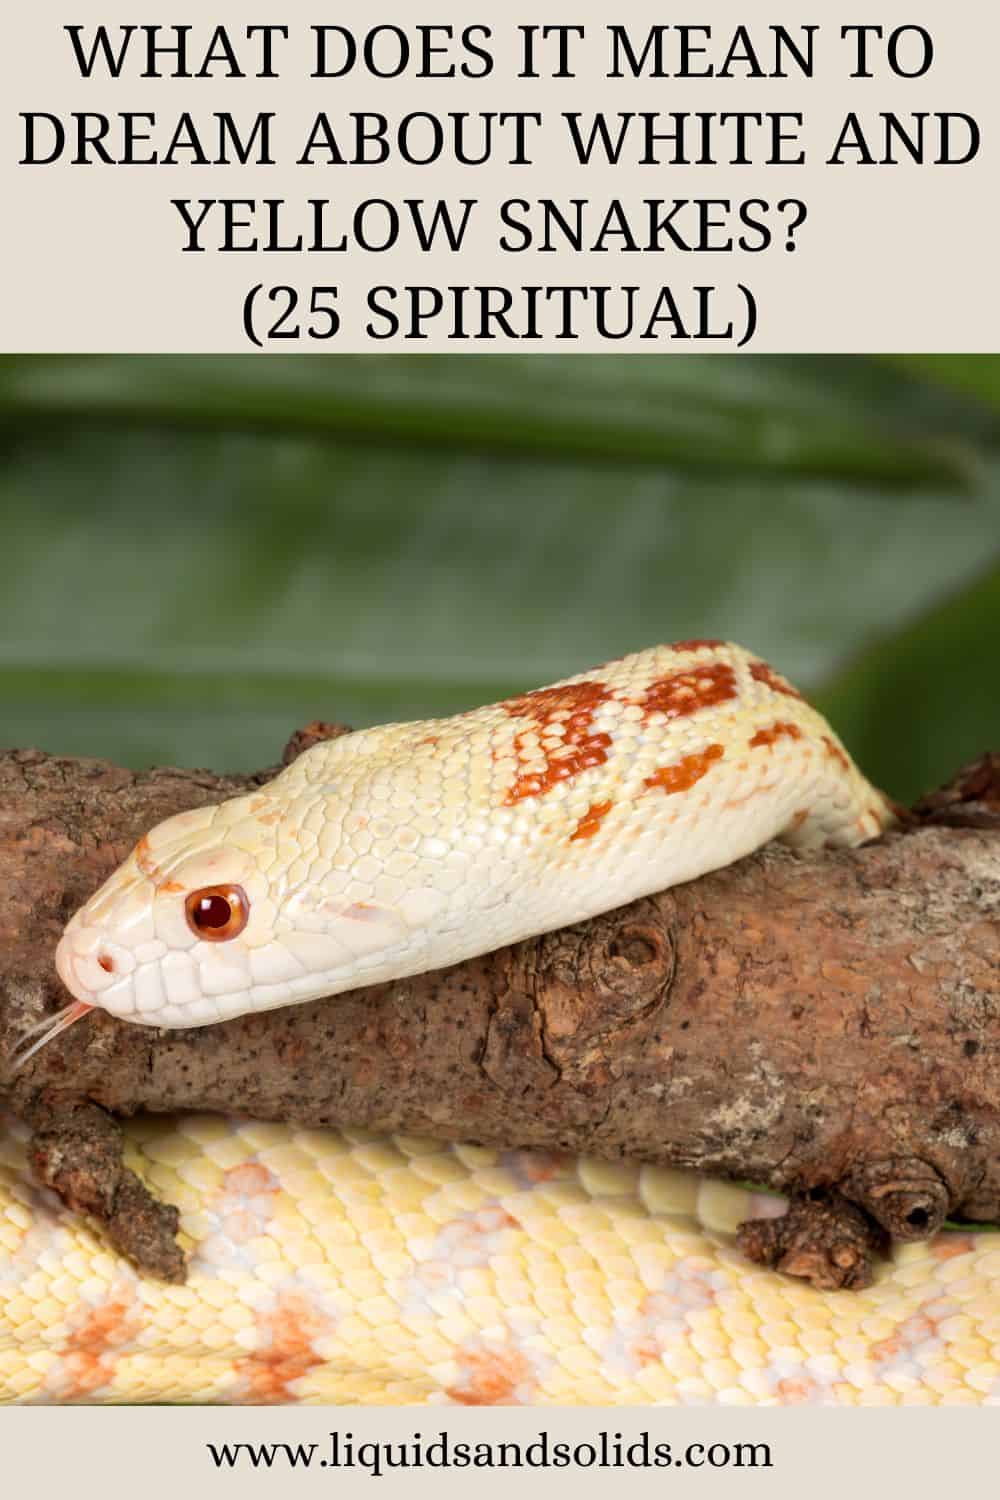  Rêver de serpents blancs et jaunes (25 significations spirituelles)